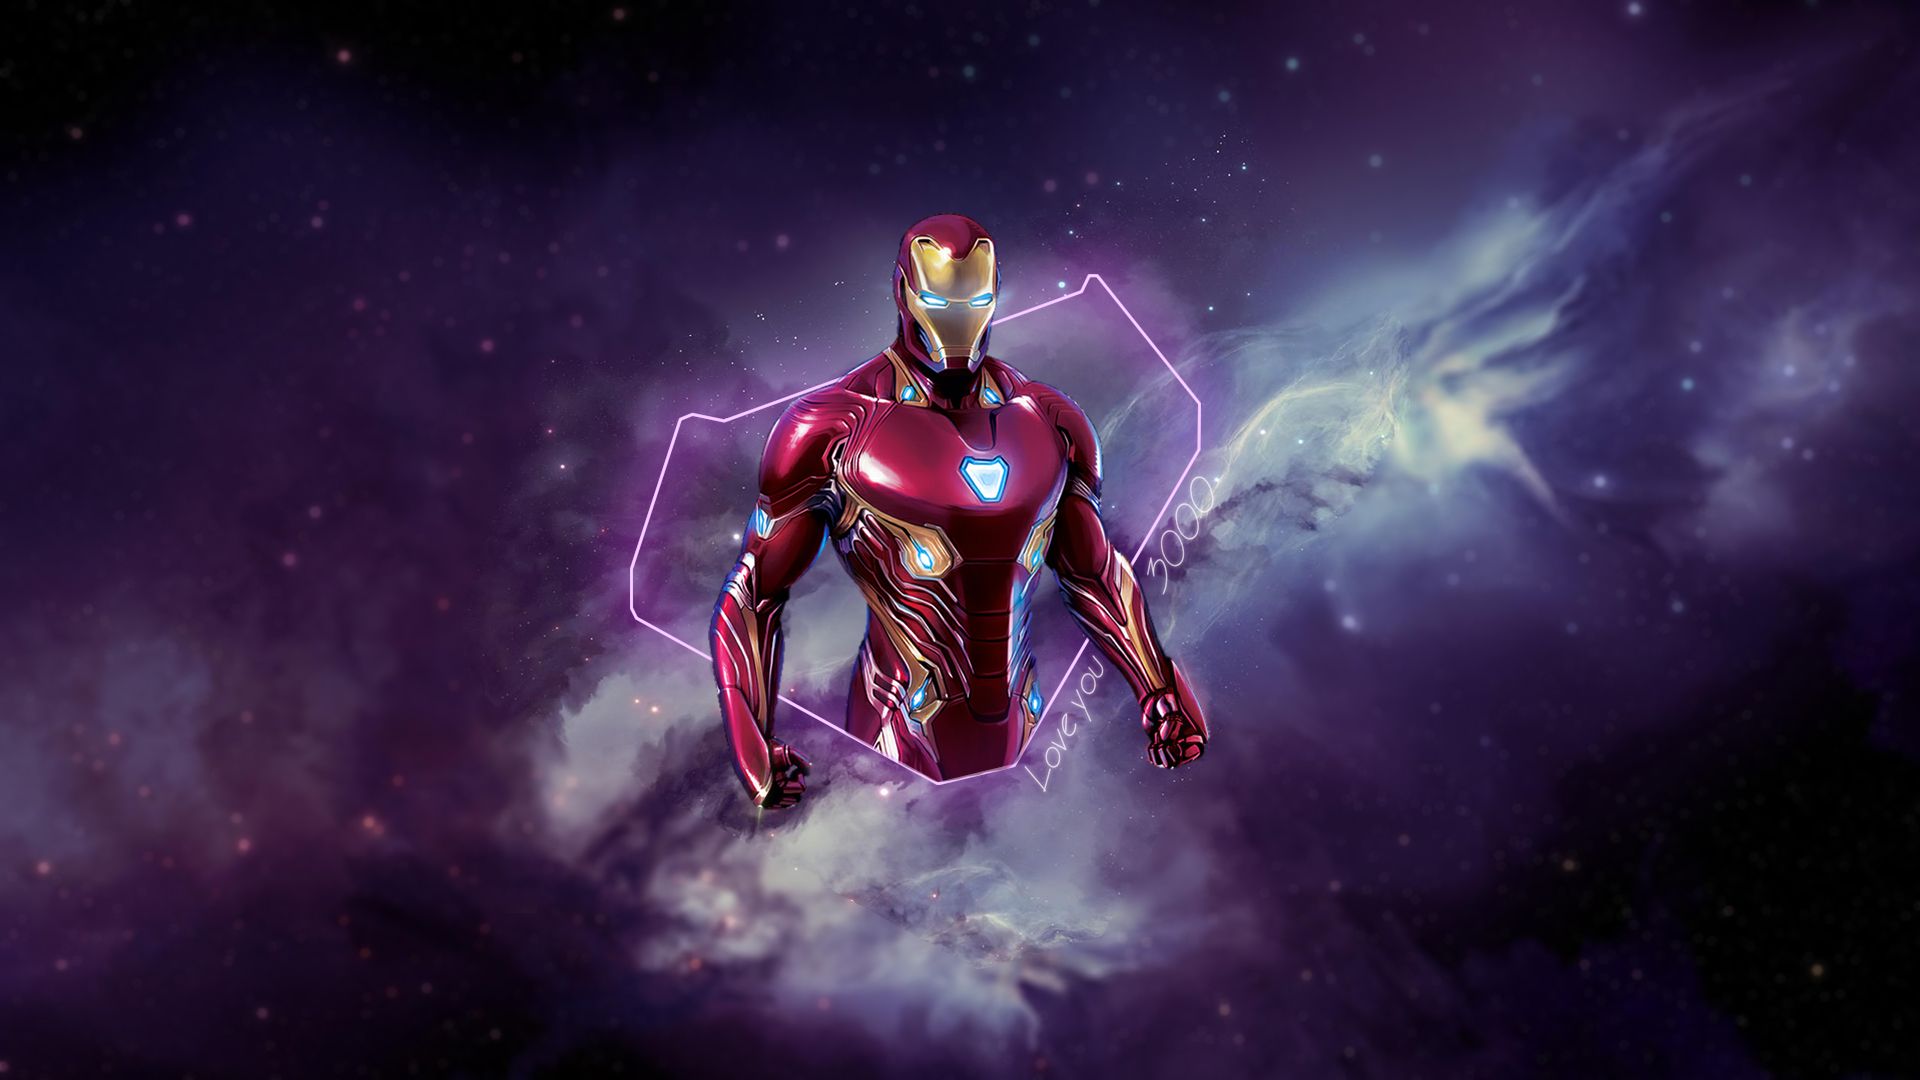 Wallpaper, Iron Man, Marvel Super Heroes, Avengers Endgame, Tony Stark, digital art 1920x1080